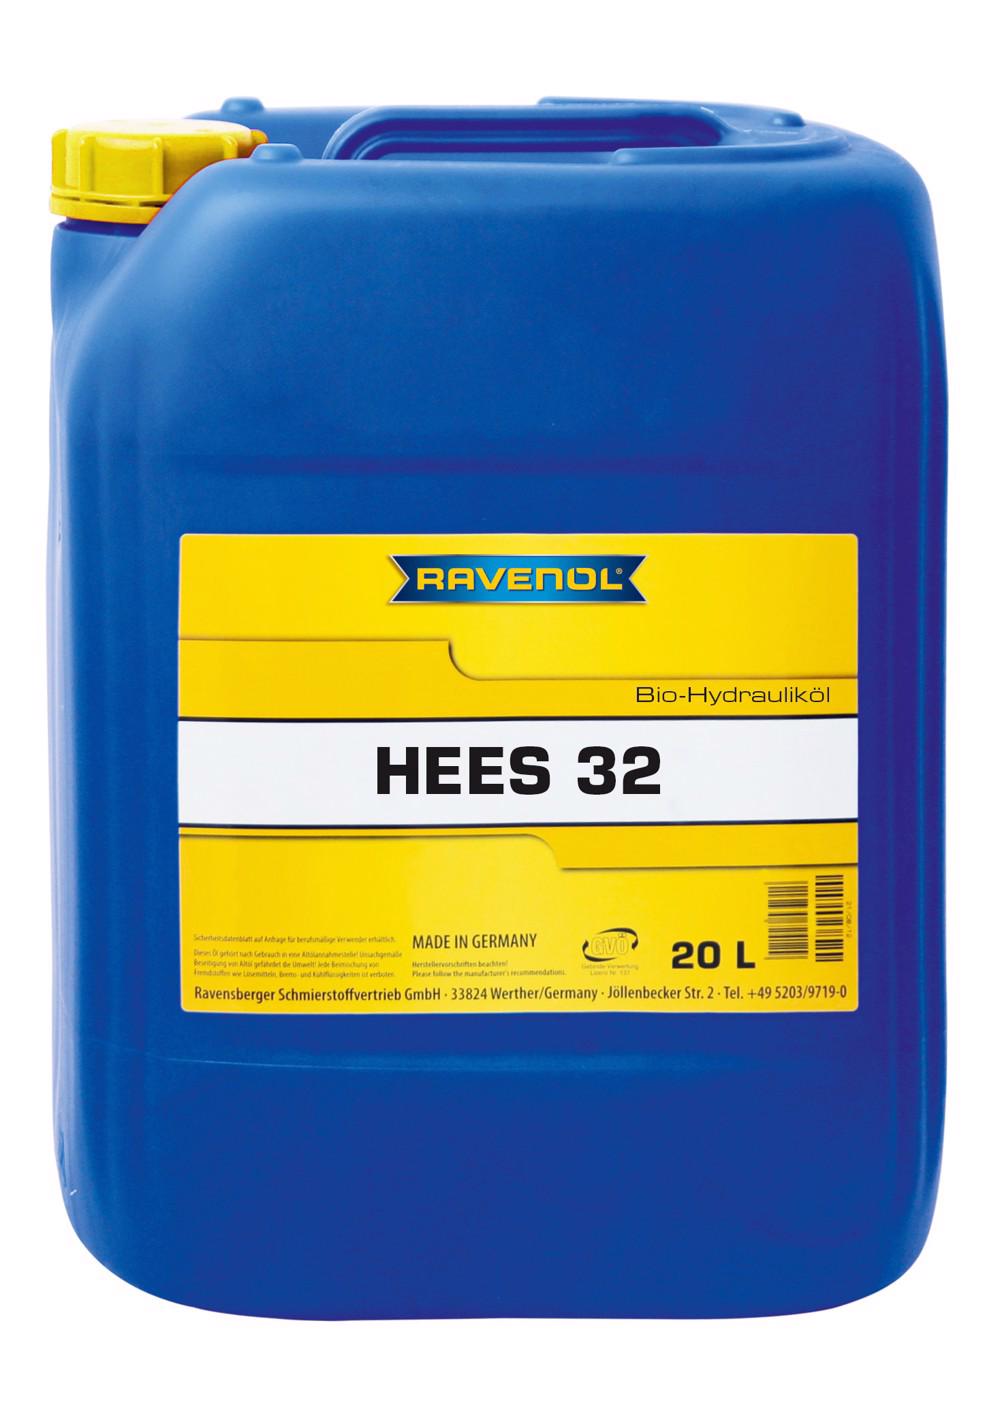 RAVENOL Bio-Hydraulikoel HEES 32  20 L